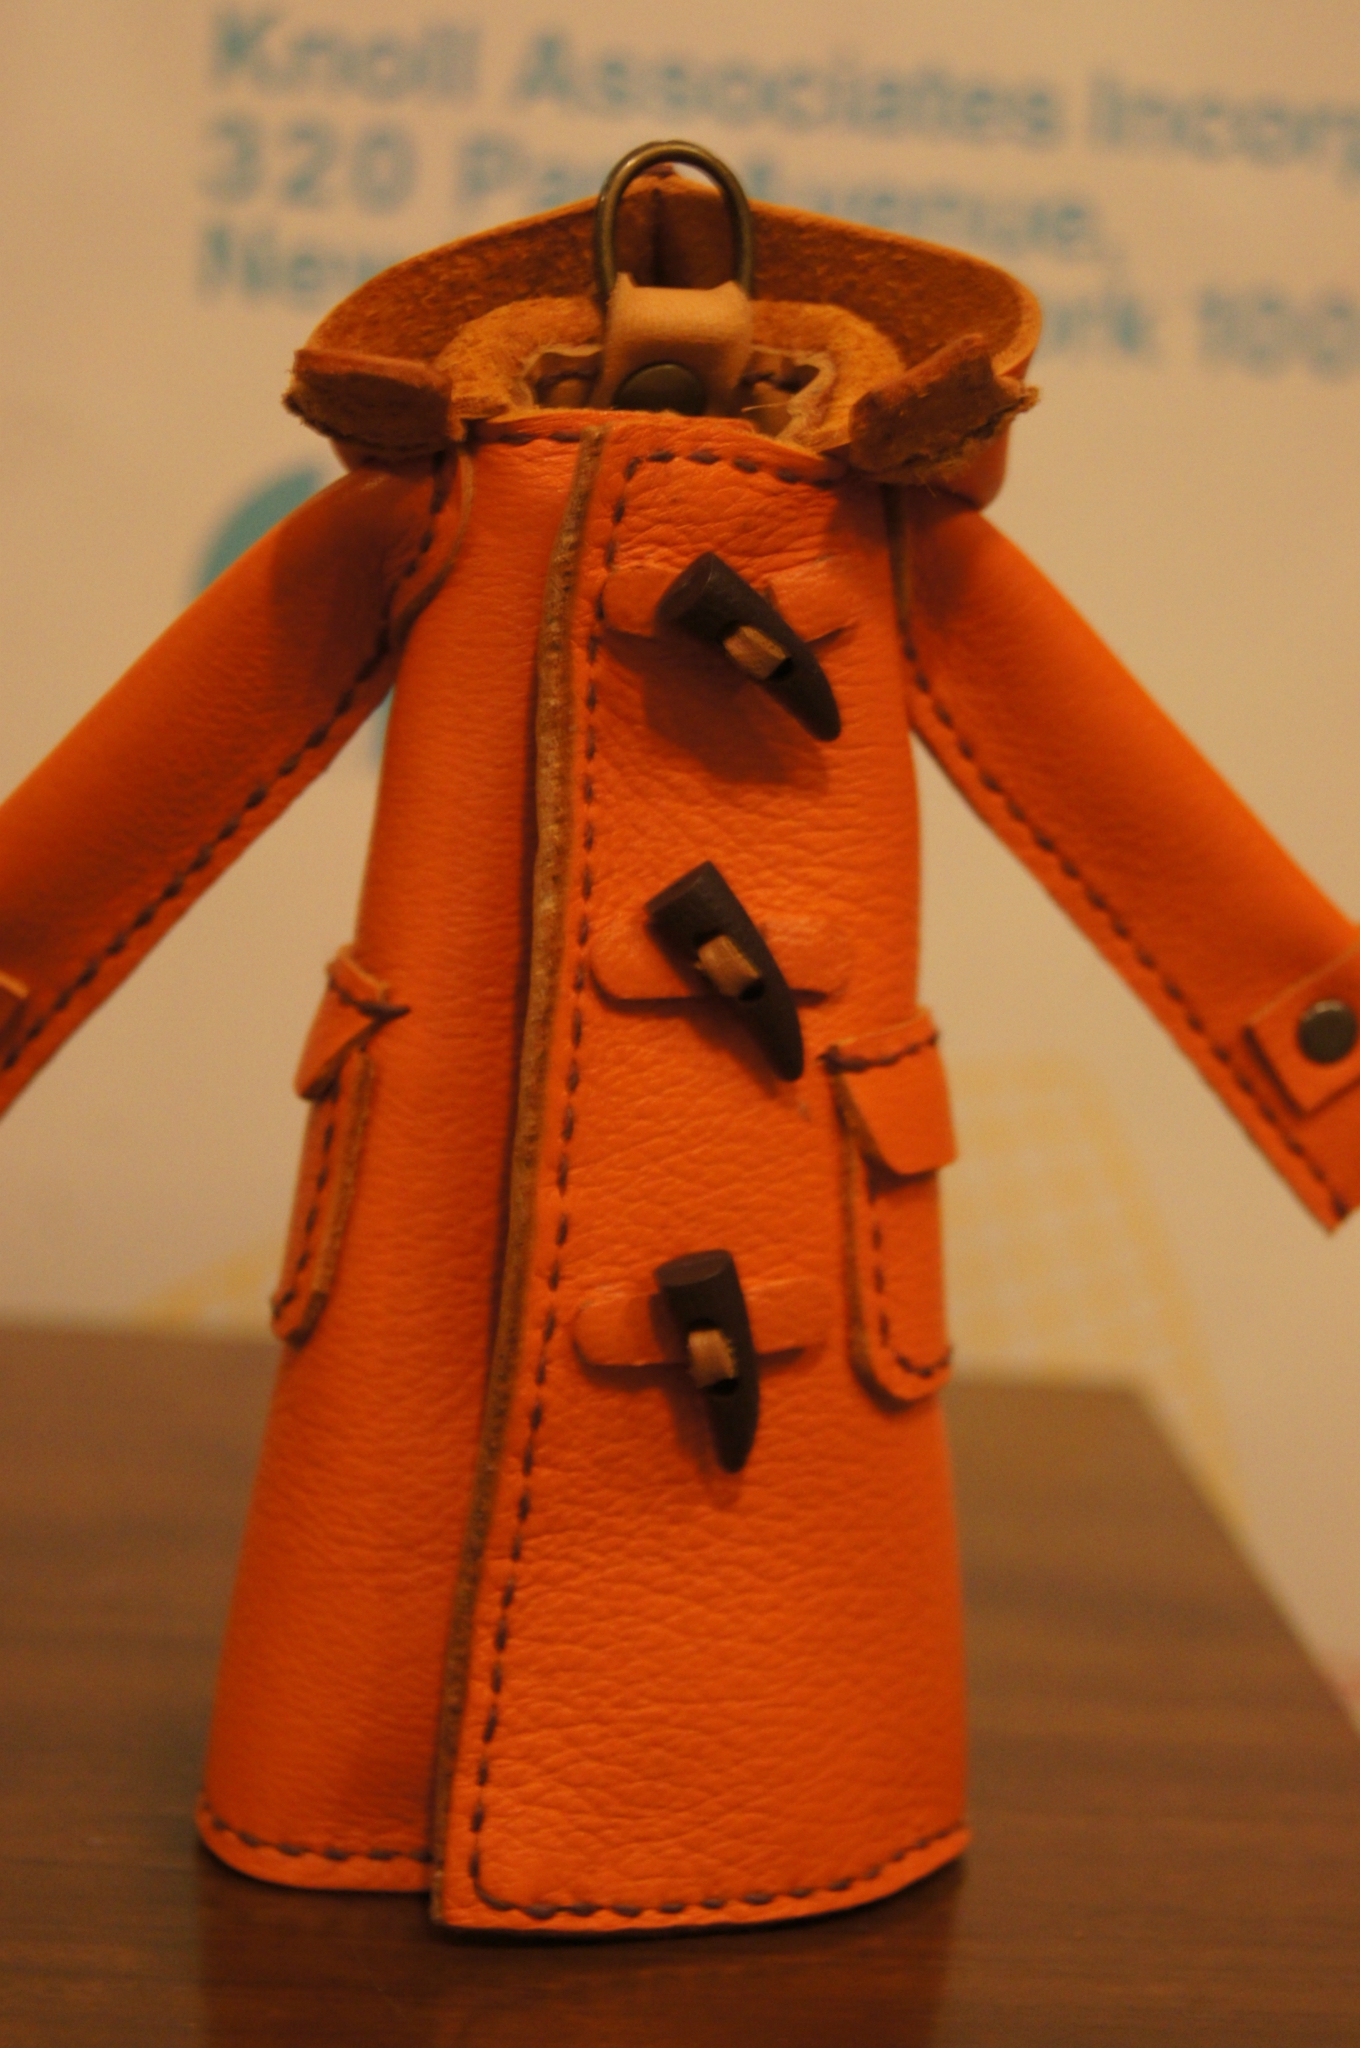 カラフルな革から生まれる作品が日々を彩る「AKI leathercrafts」:handmade accessories  NICOの小箱BLOG「ふたつめの箱」